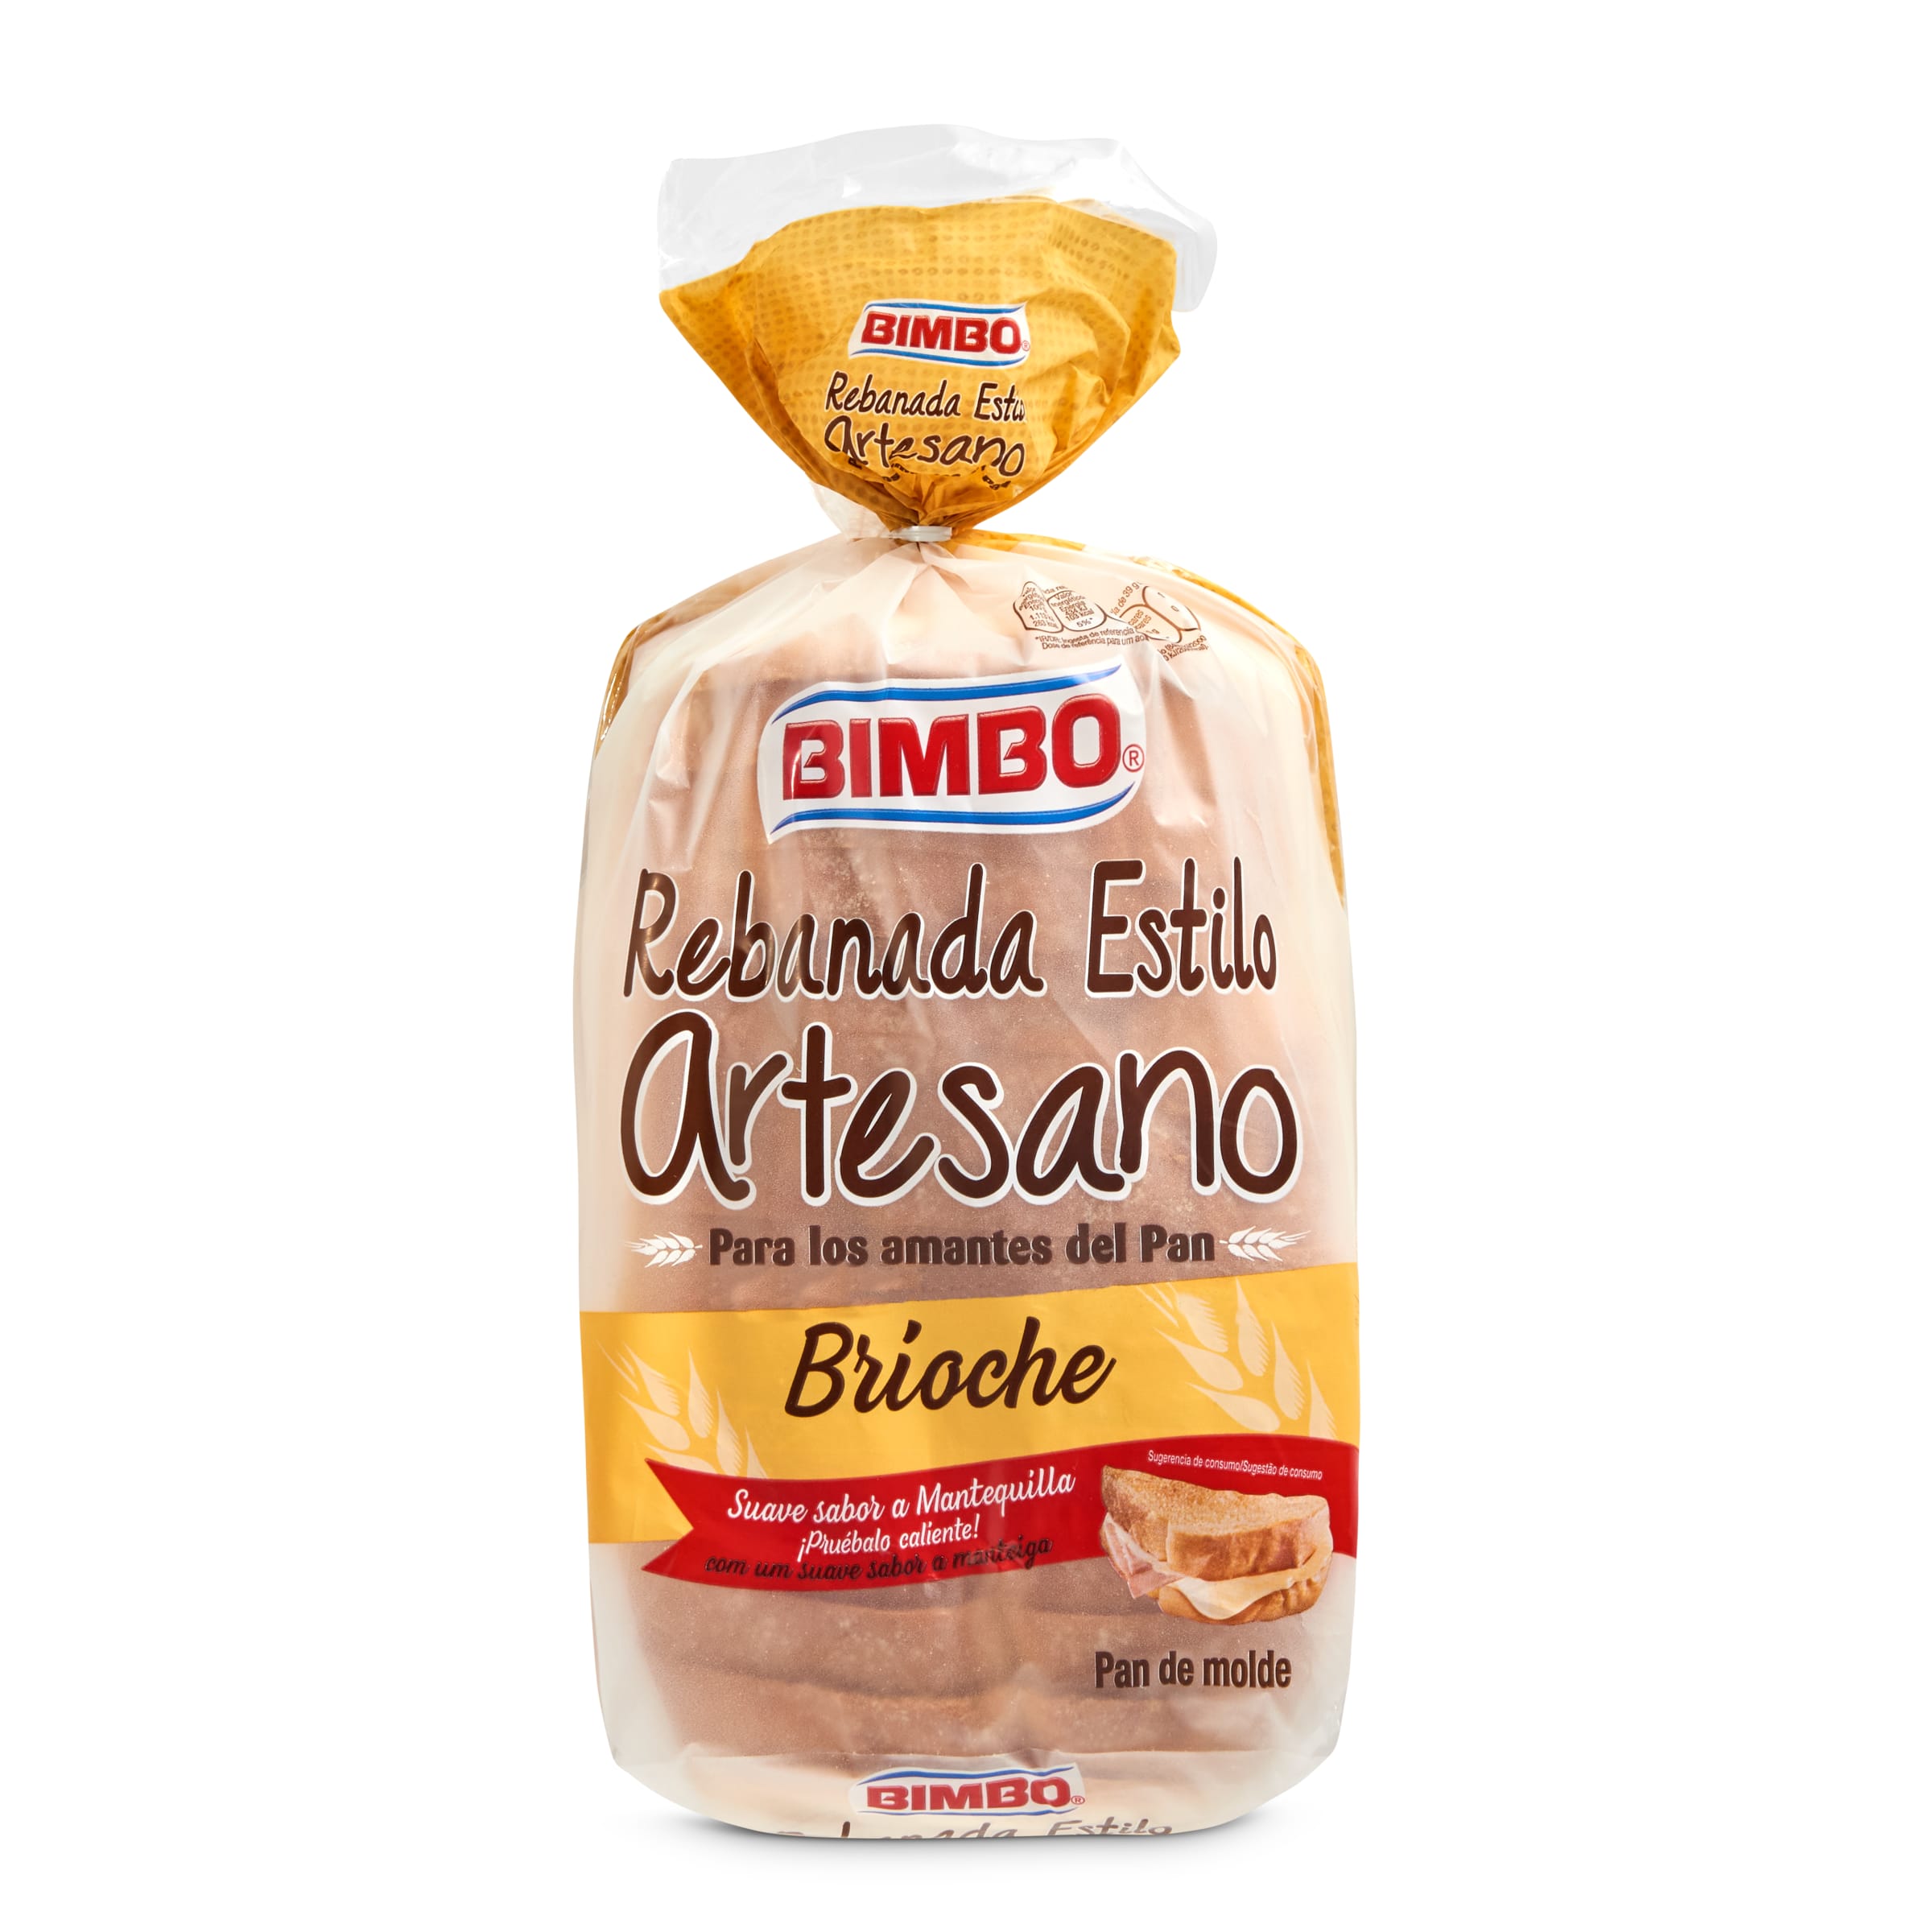 Pan de molde artesano brioche BIMBO BOLSA 550 GR - Supermercados DIA